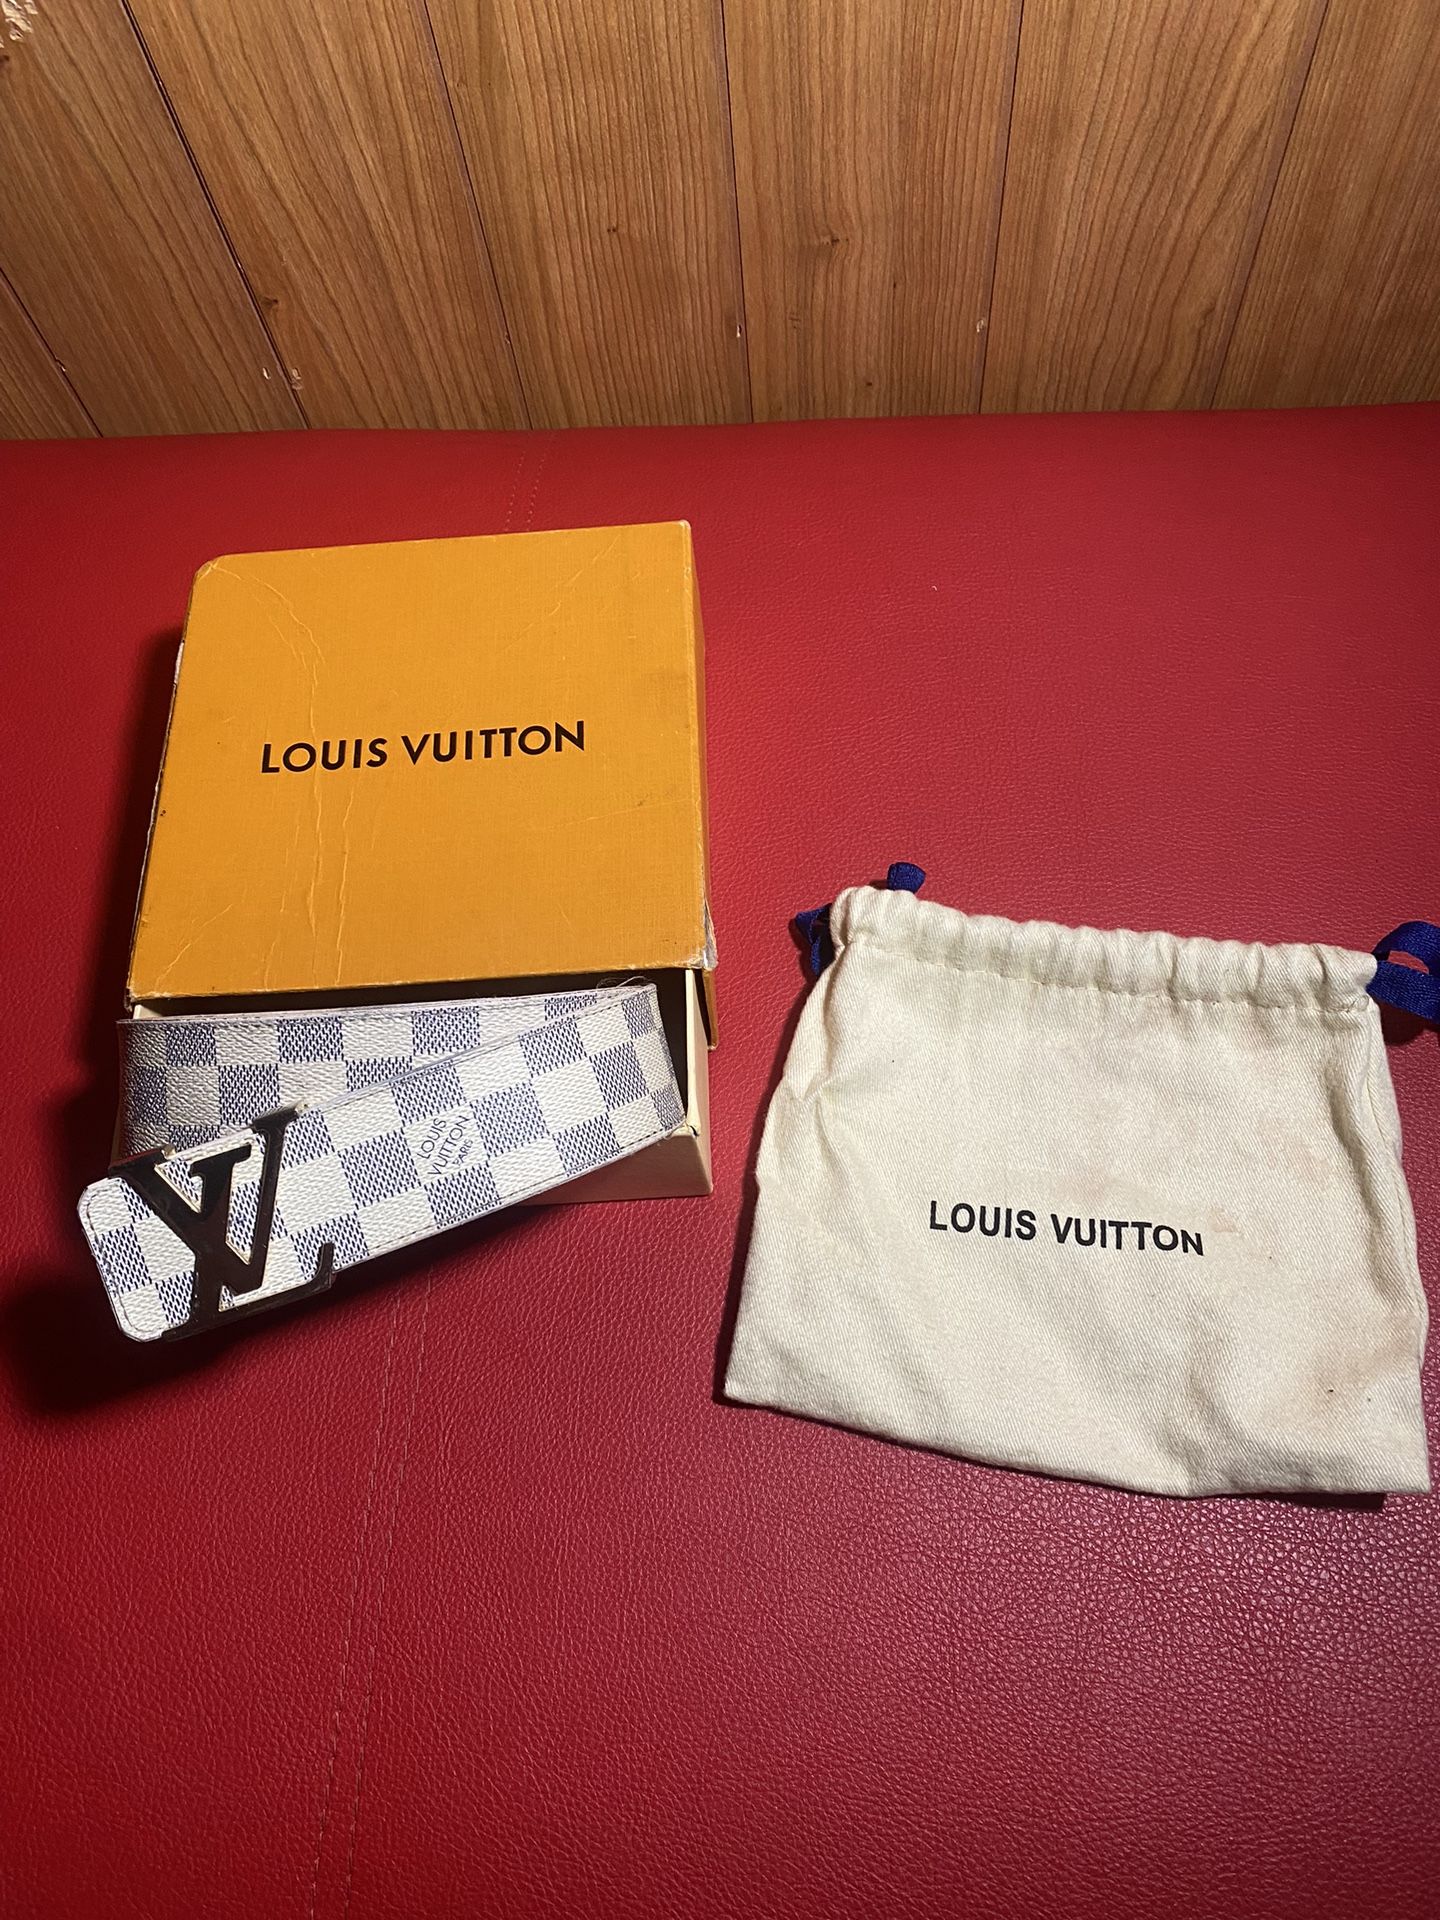 Louis Vuitton Parent Company Stockton